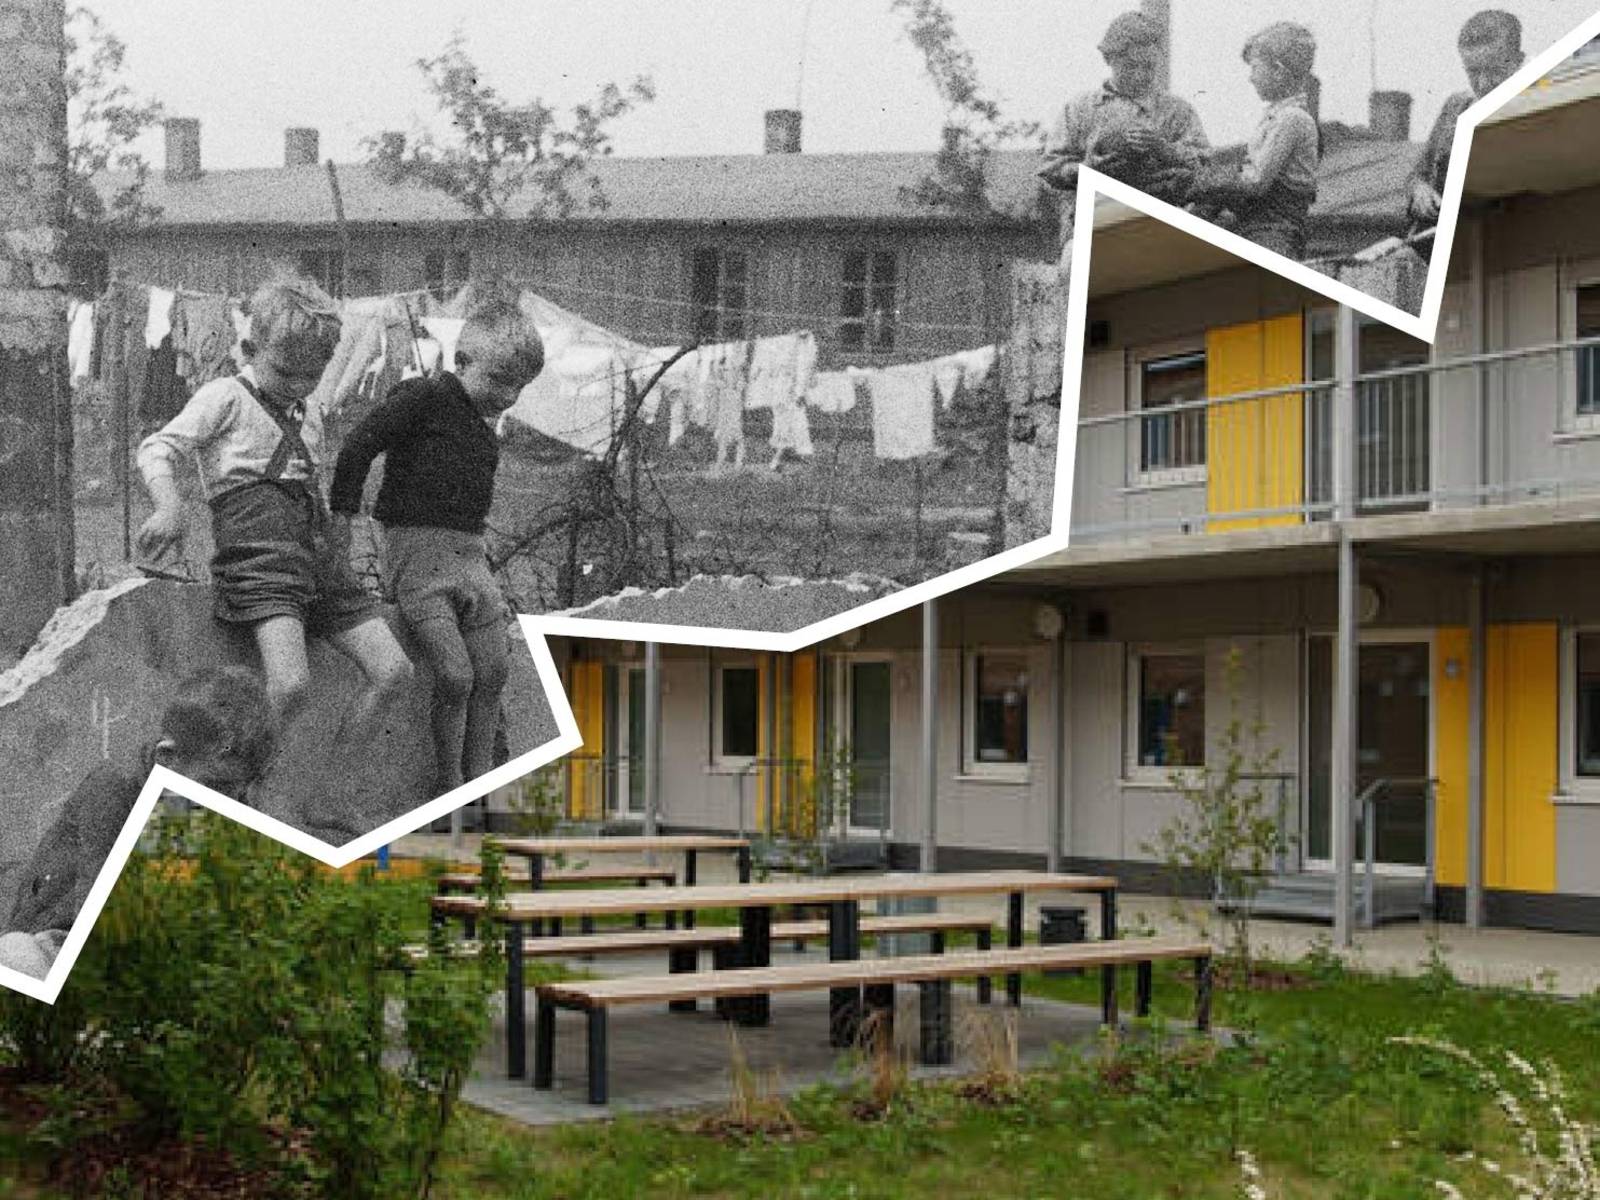 Flüchtlingslager Stöcken, 1948; Flüchtlingsunterkunft Herrenhausen, 2018
